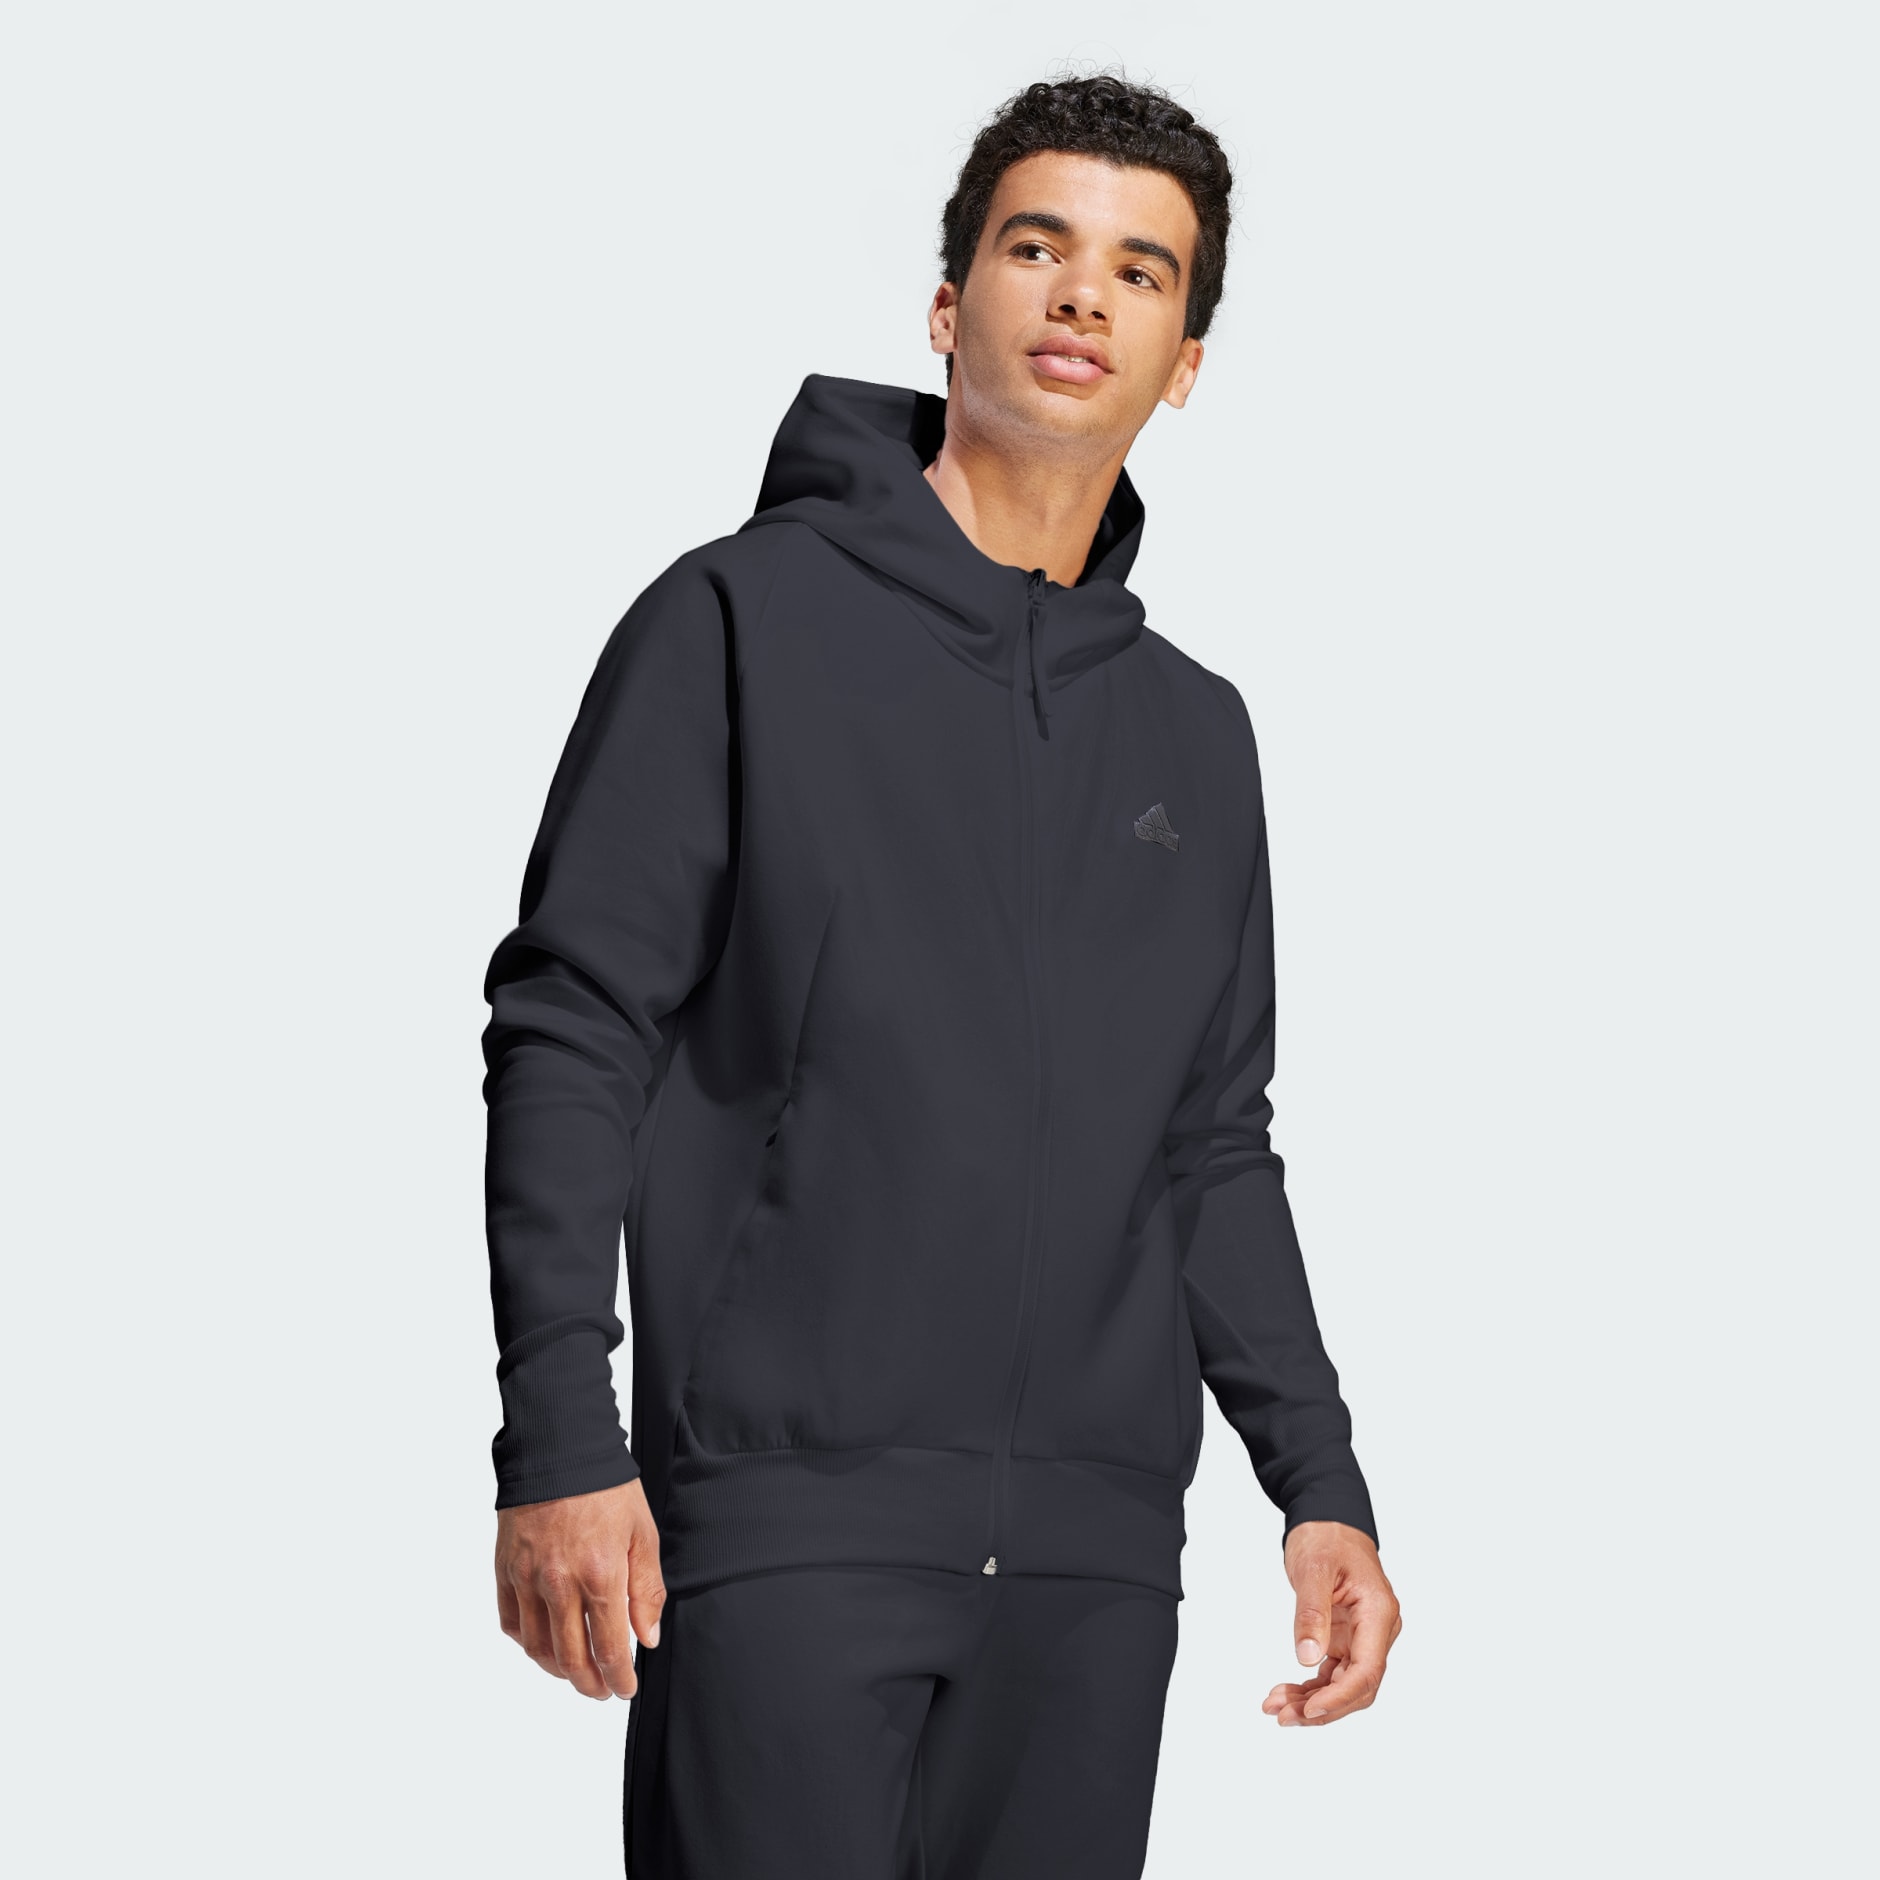 Veste Blanche/Noir Homme Adidas Fleece | Espace des marques